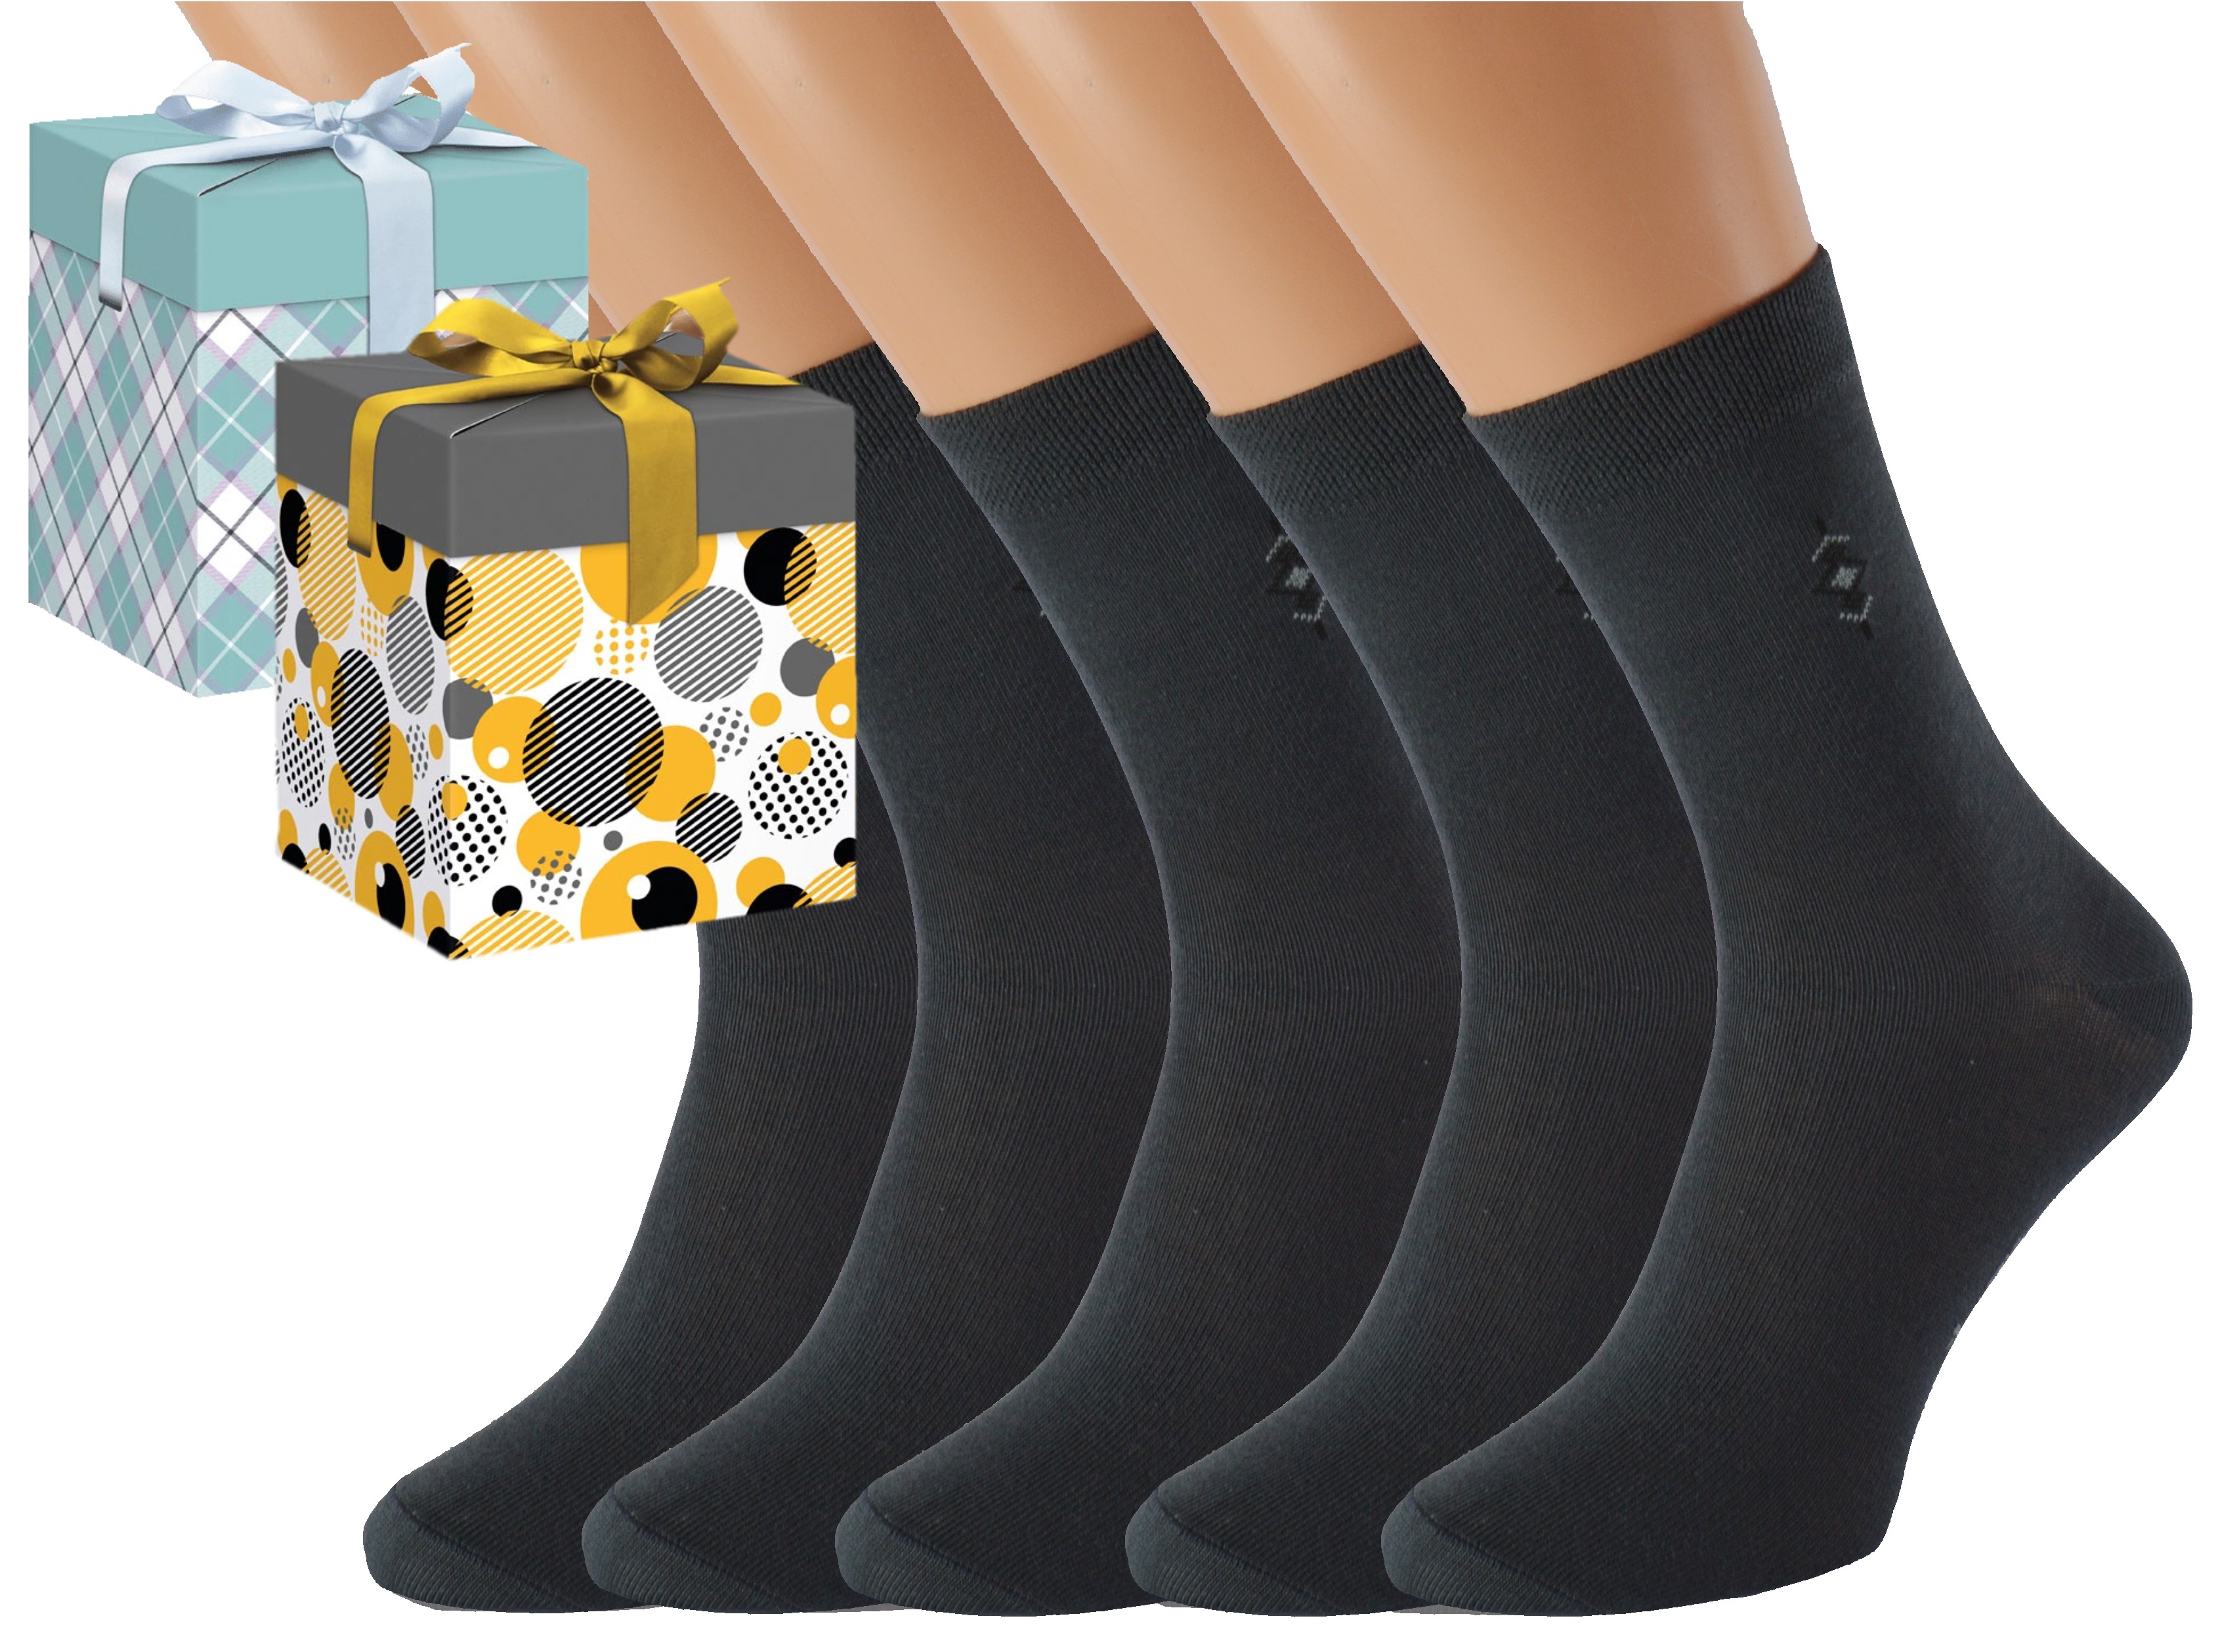 Dárkové balení 5 párů společenských ponožek BOBOLYC Barva: Tmavě šedé, Velikost: EUR 38-41 (UK 5-7), Zvolte variantu dárkového balení: Modrá s oky